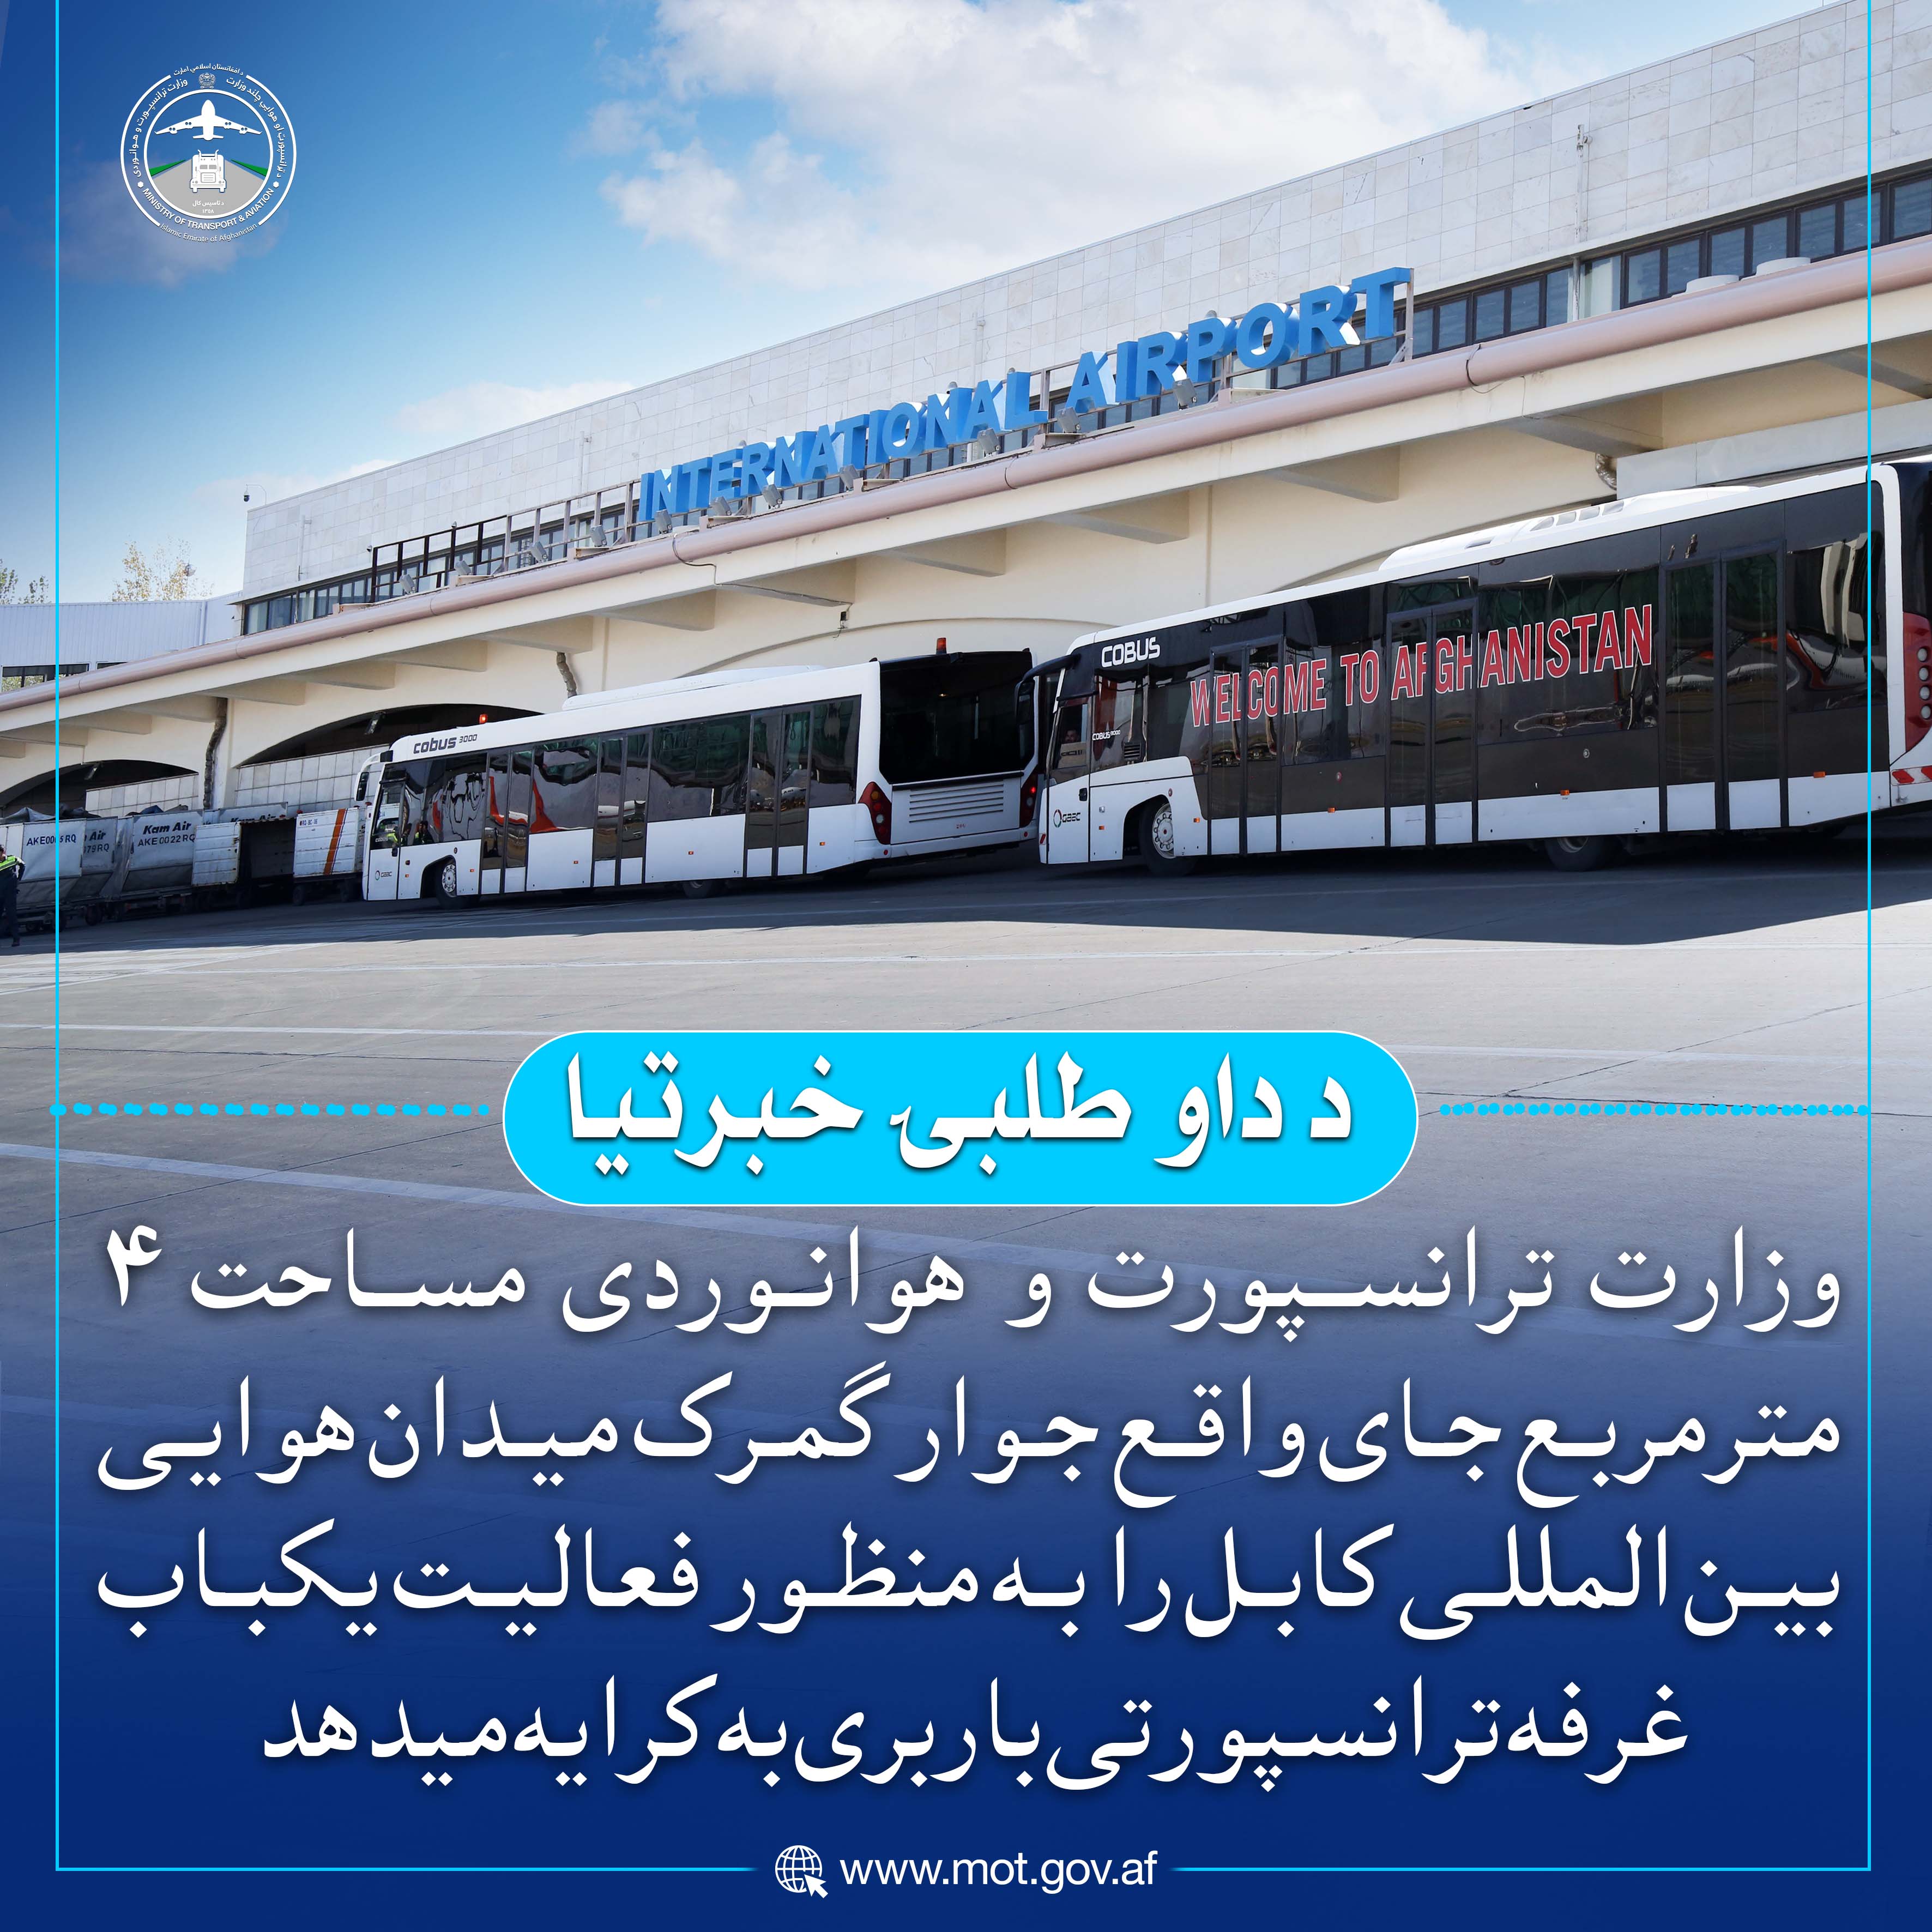 وزارت ترانسپورت و هوانوردی مساحت ۴ مترمربع جای واقع جوار گمرک میدان هوایی بین المللی کابل را به منظور فعالیت یکباب غرفه ترانسپورتی باربری به کرایه میدهد